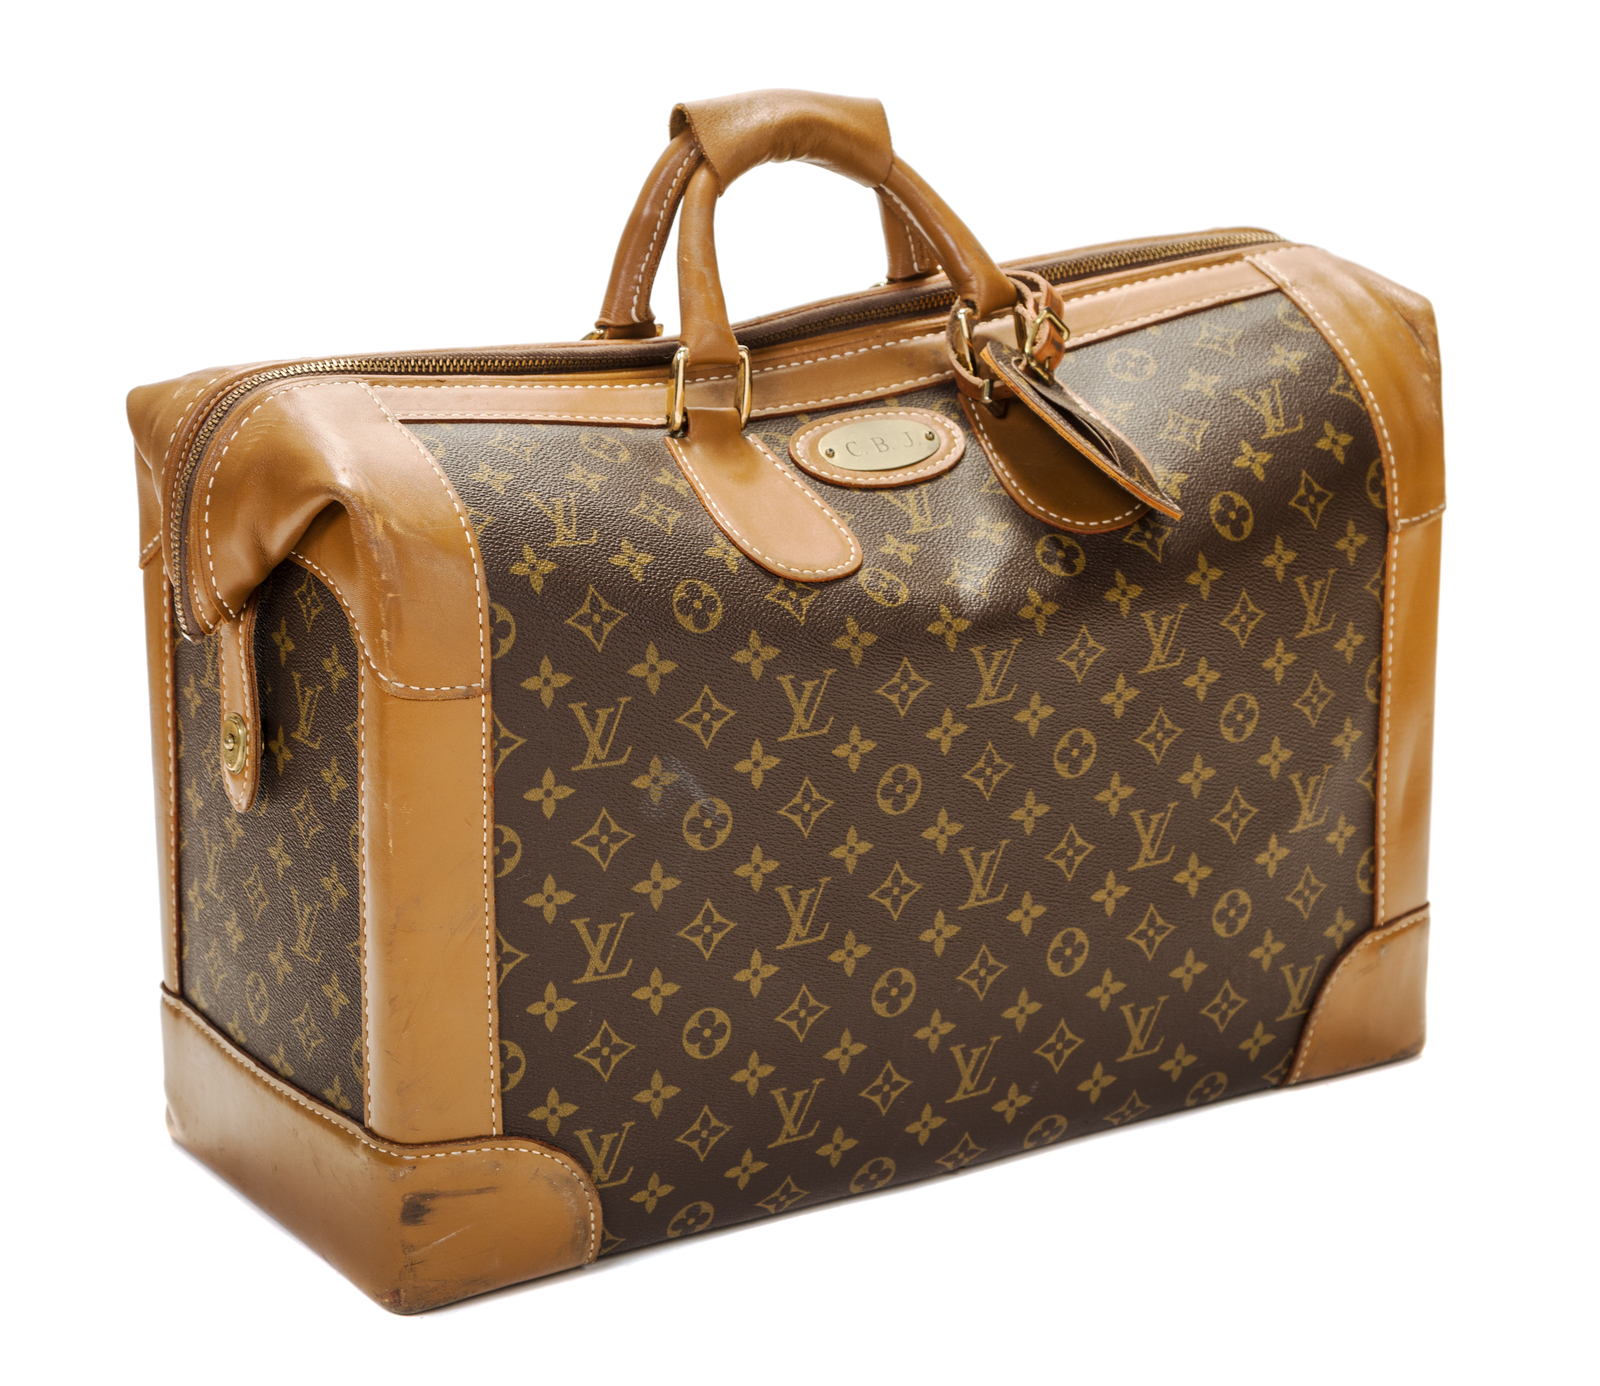 Lot - A Louis Vuitton leather trimmed monogram canvas duffle bag